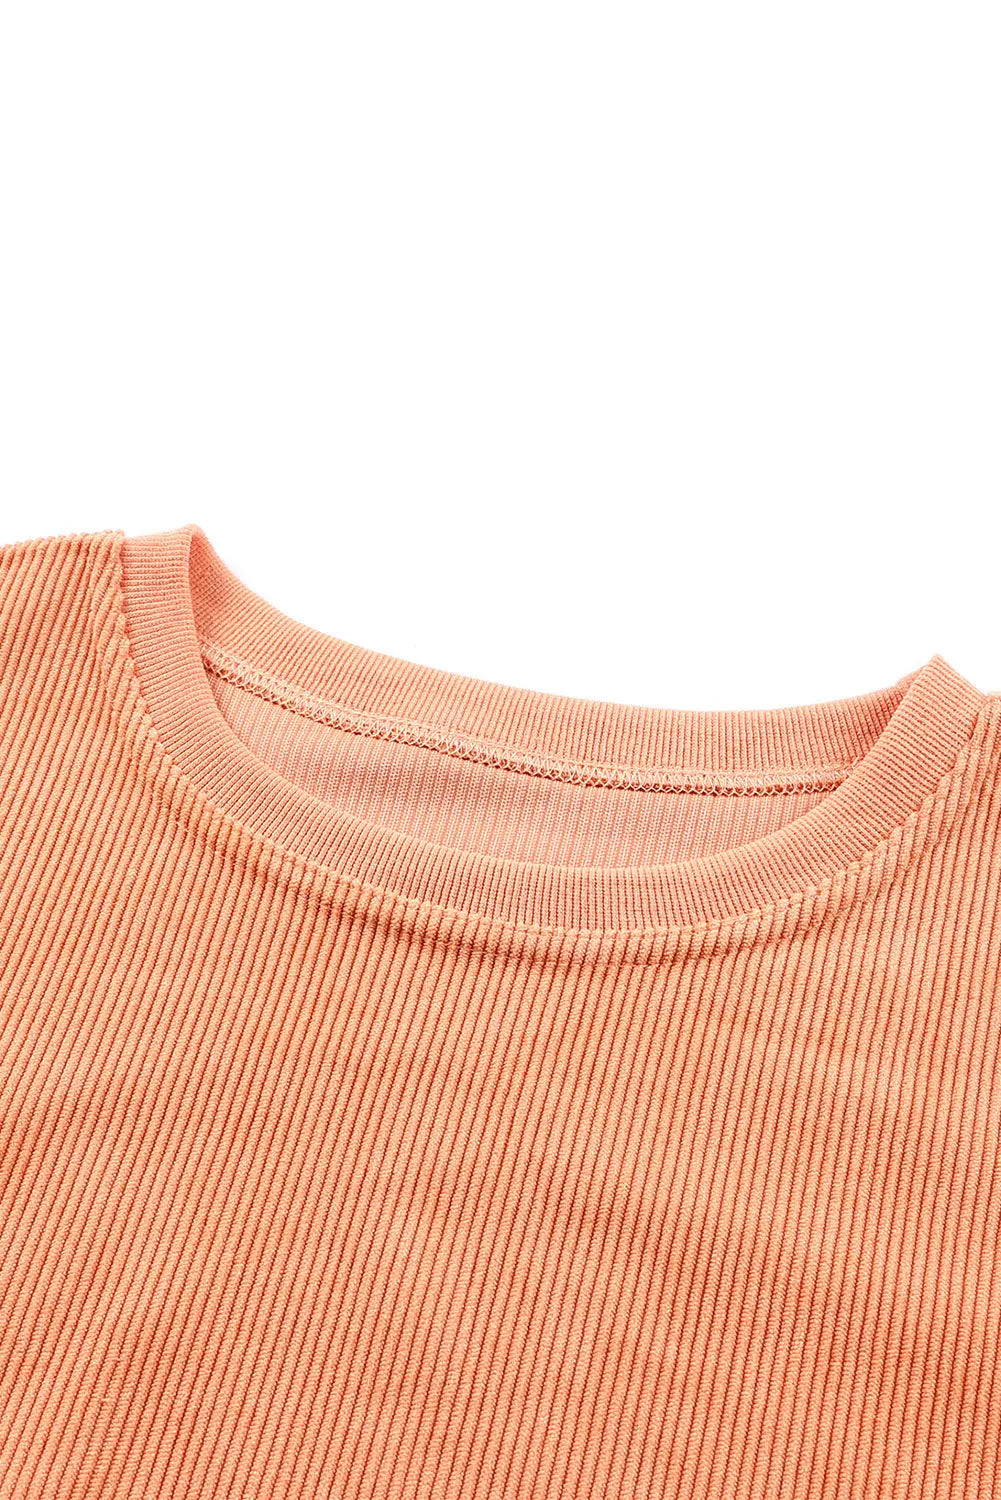 Orange Jolene Letter Print Ribbed Oversized Sweatshirt Rite Choice Clothing